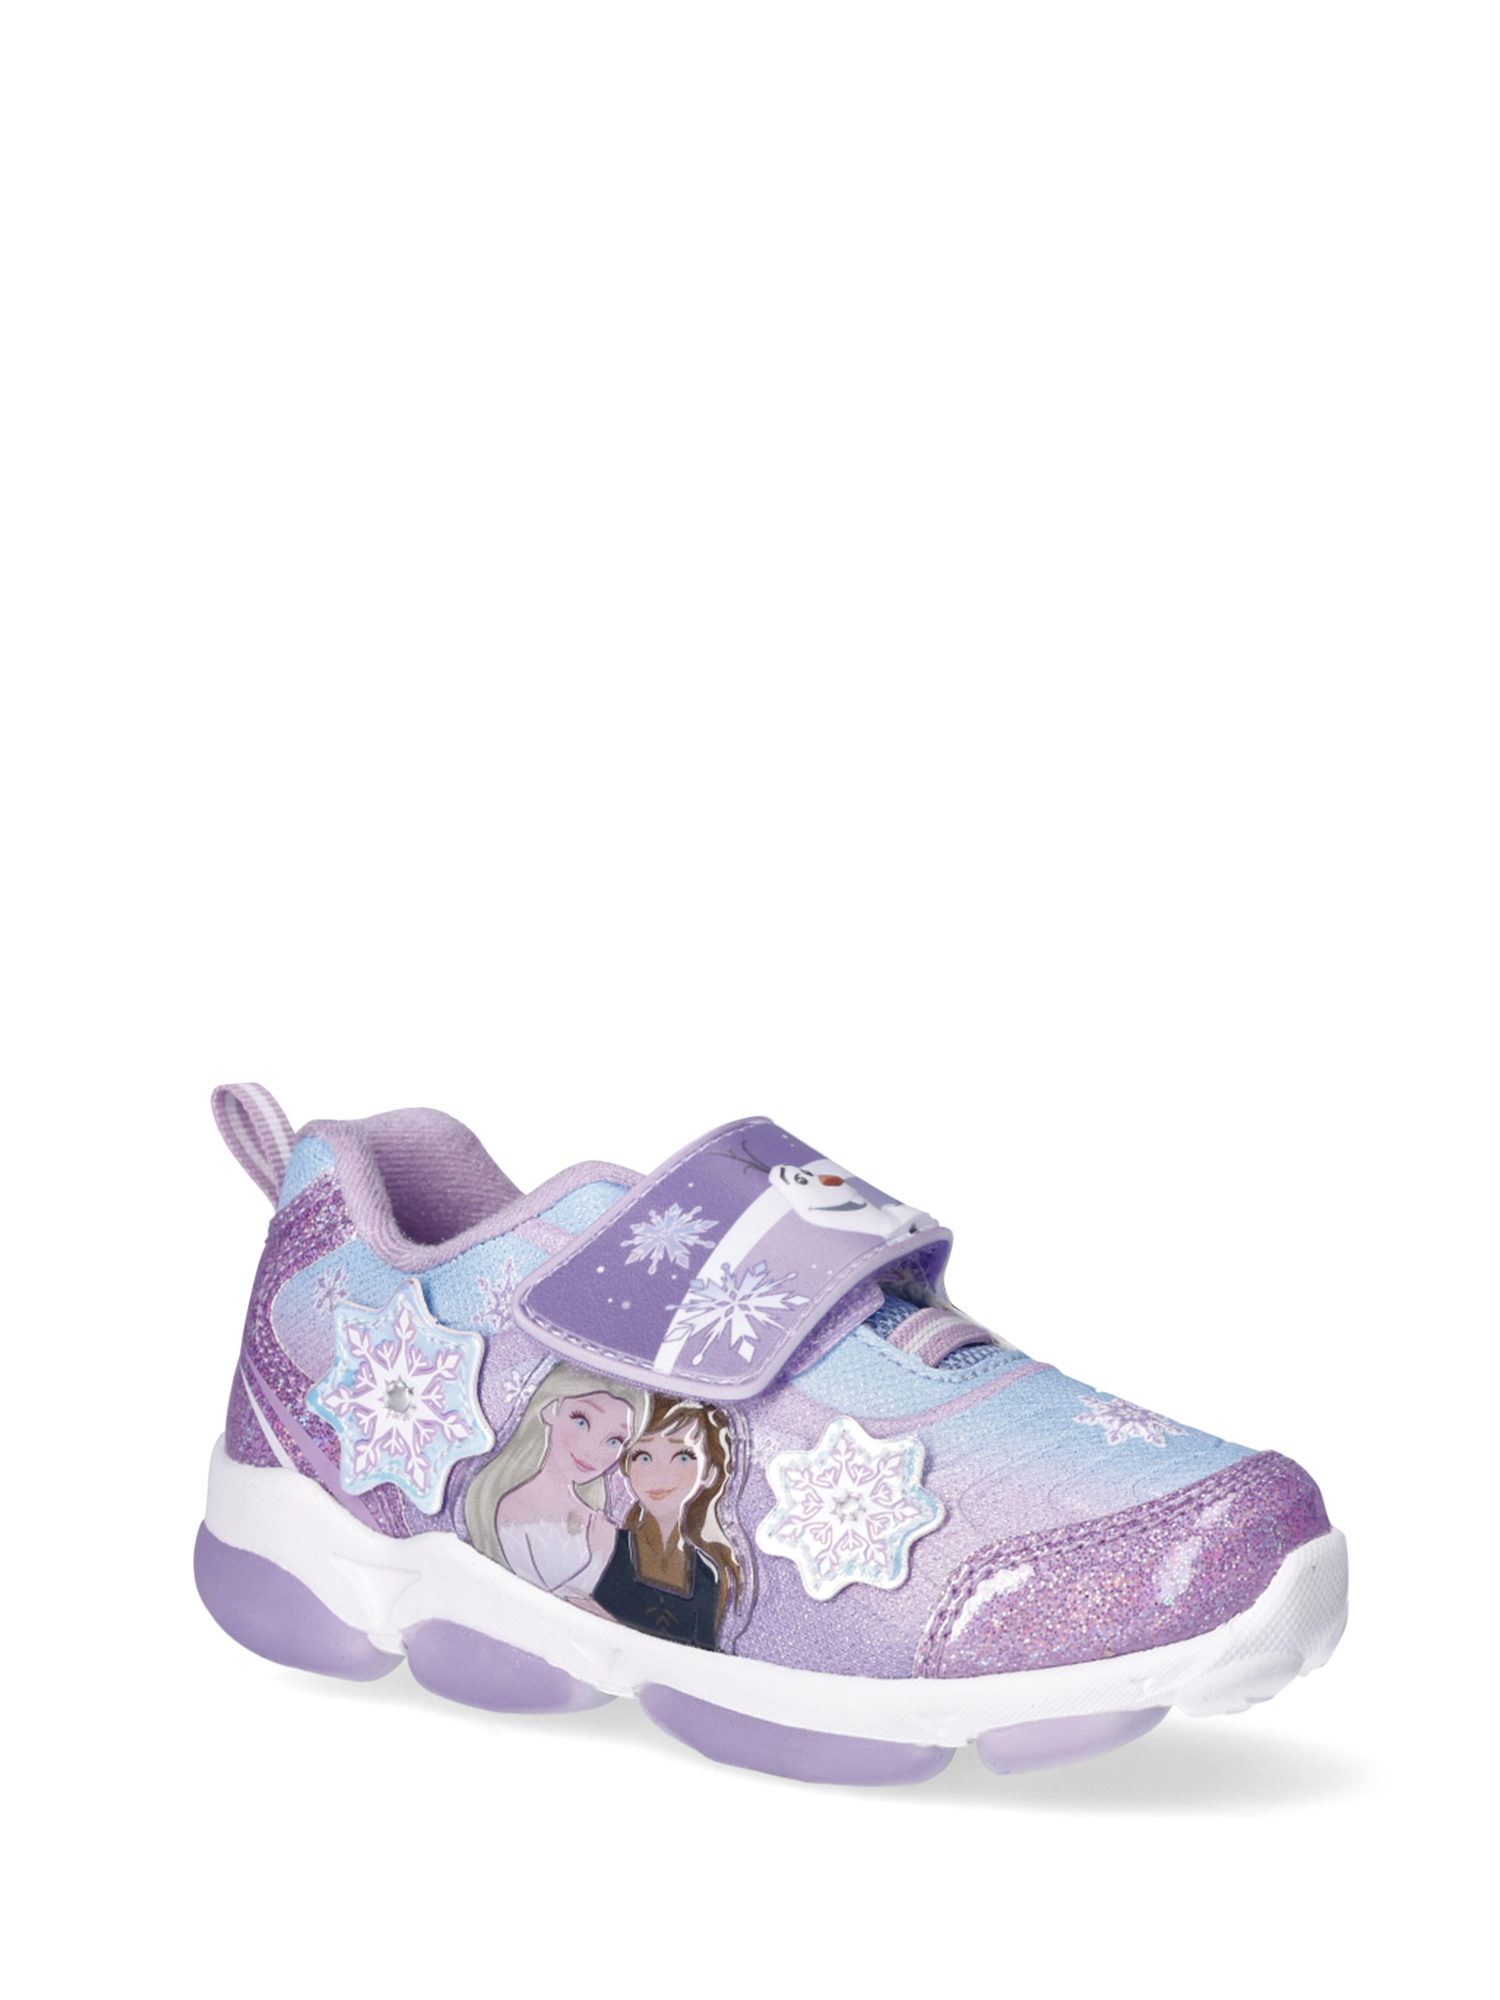 Disney Frozen Toddler Girl Light Up Slip On Sneakers, Sizes 7-12 